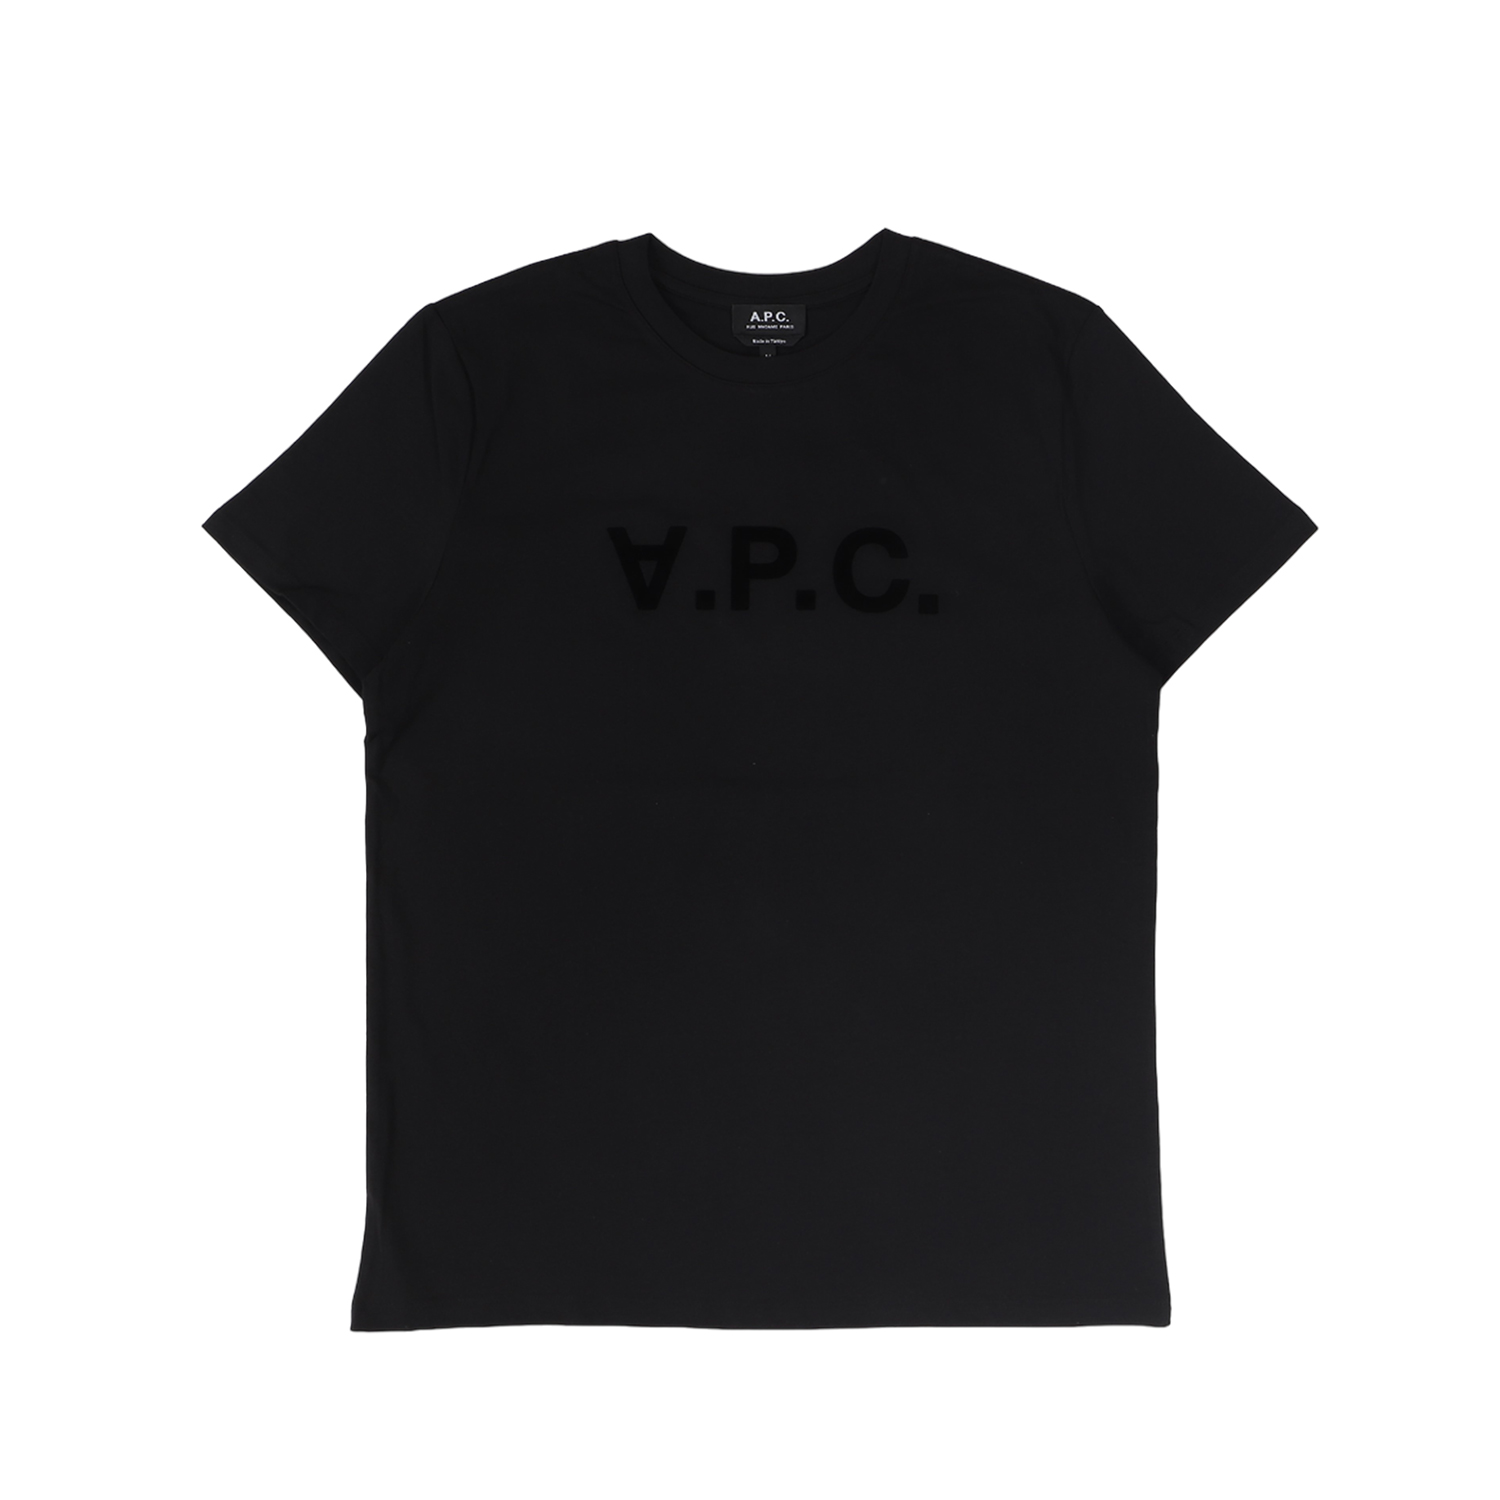 A.P.C. アーペーセー Tシャツ 半袖 メンズ V.P.C. H ブラック ベージュ ダーク ネ...